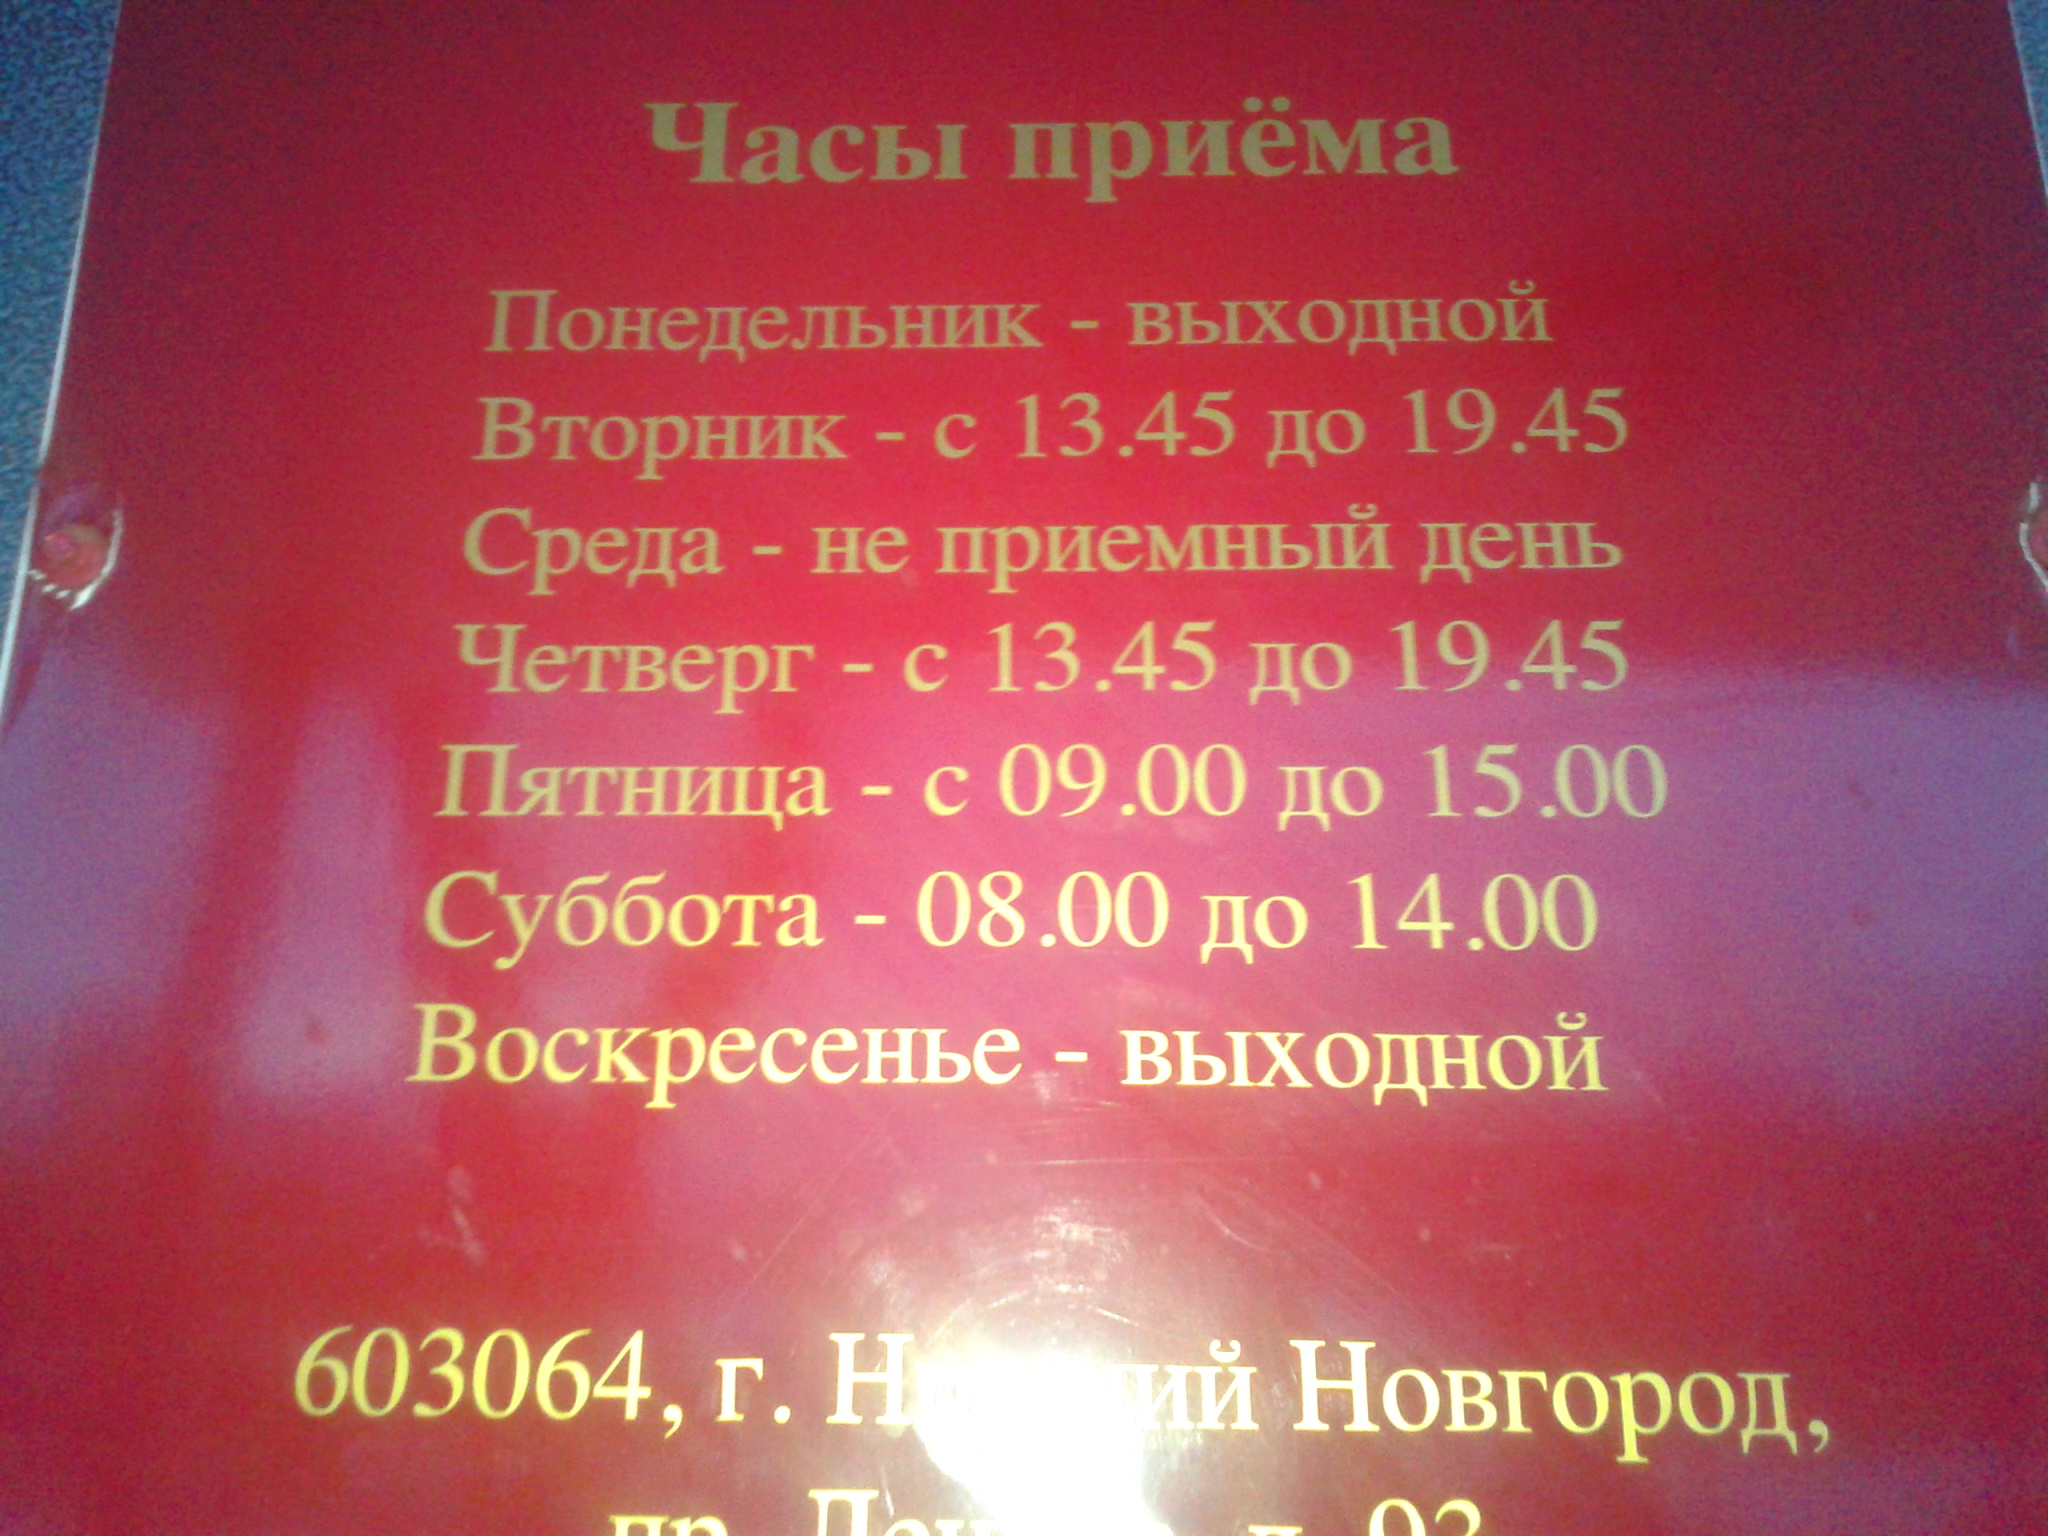 Телефон паспортного стола ленинского